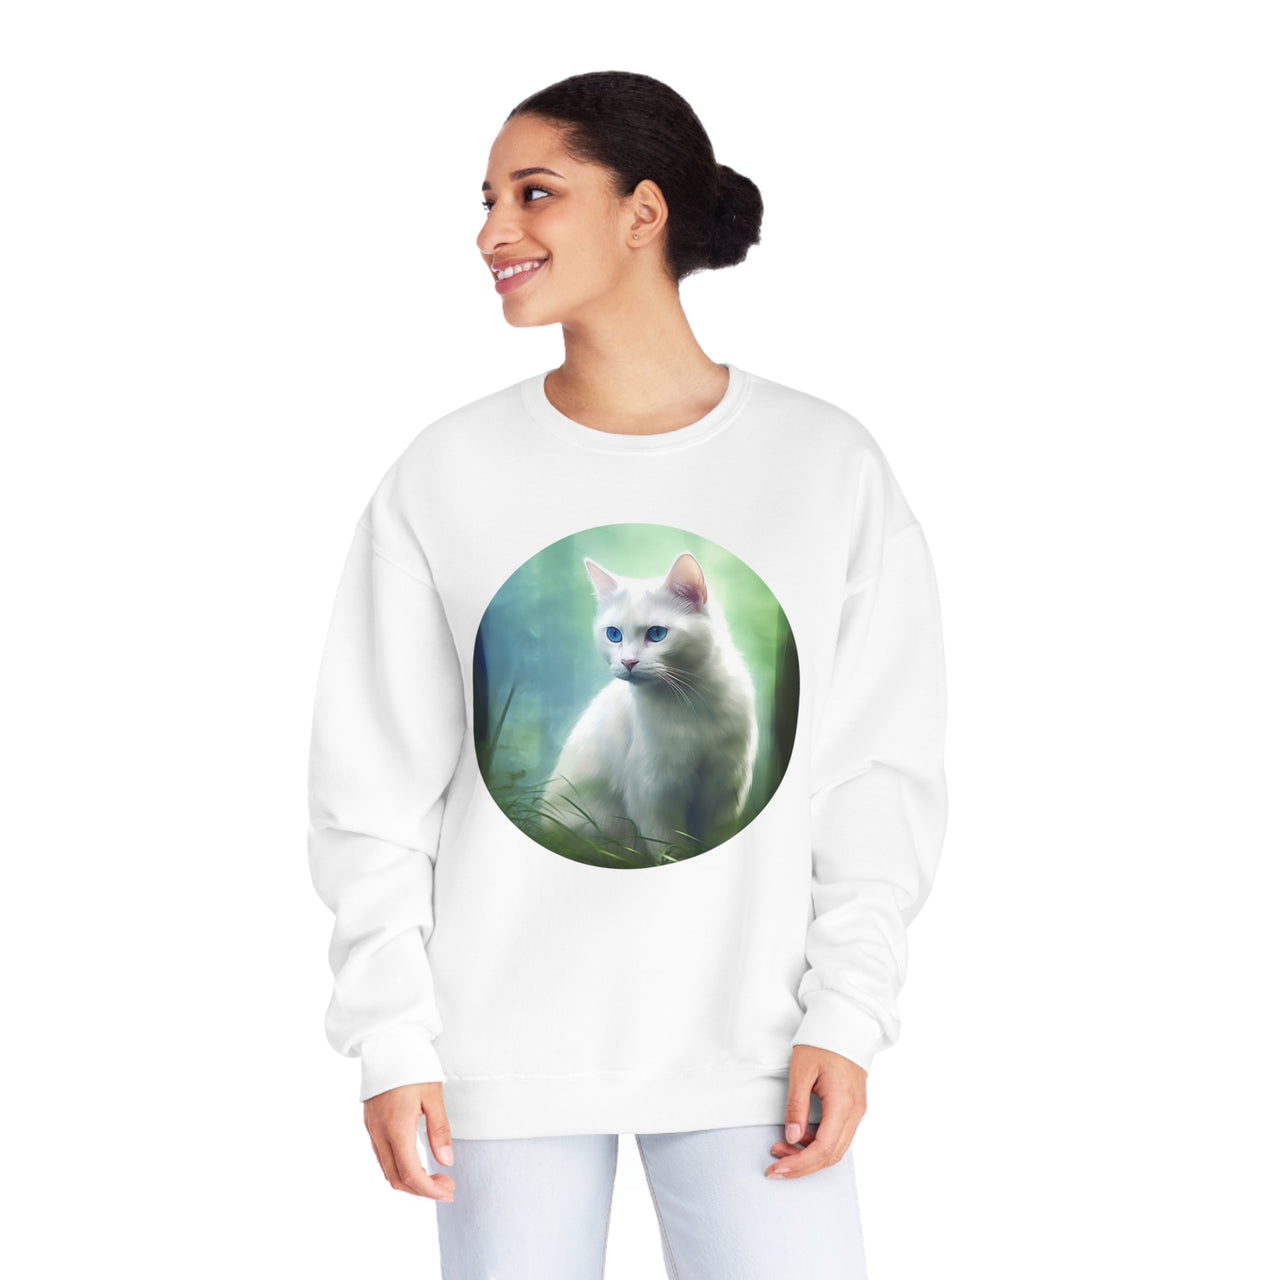 White Cat In The Grass 💚 🐈 Sweatshirt